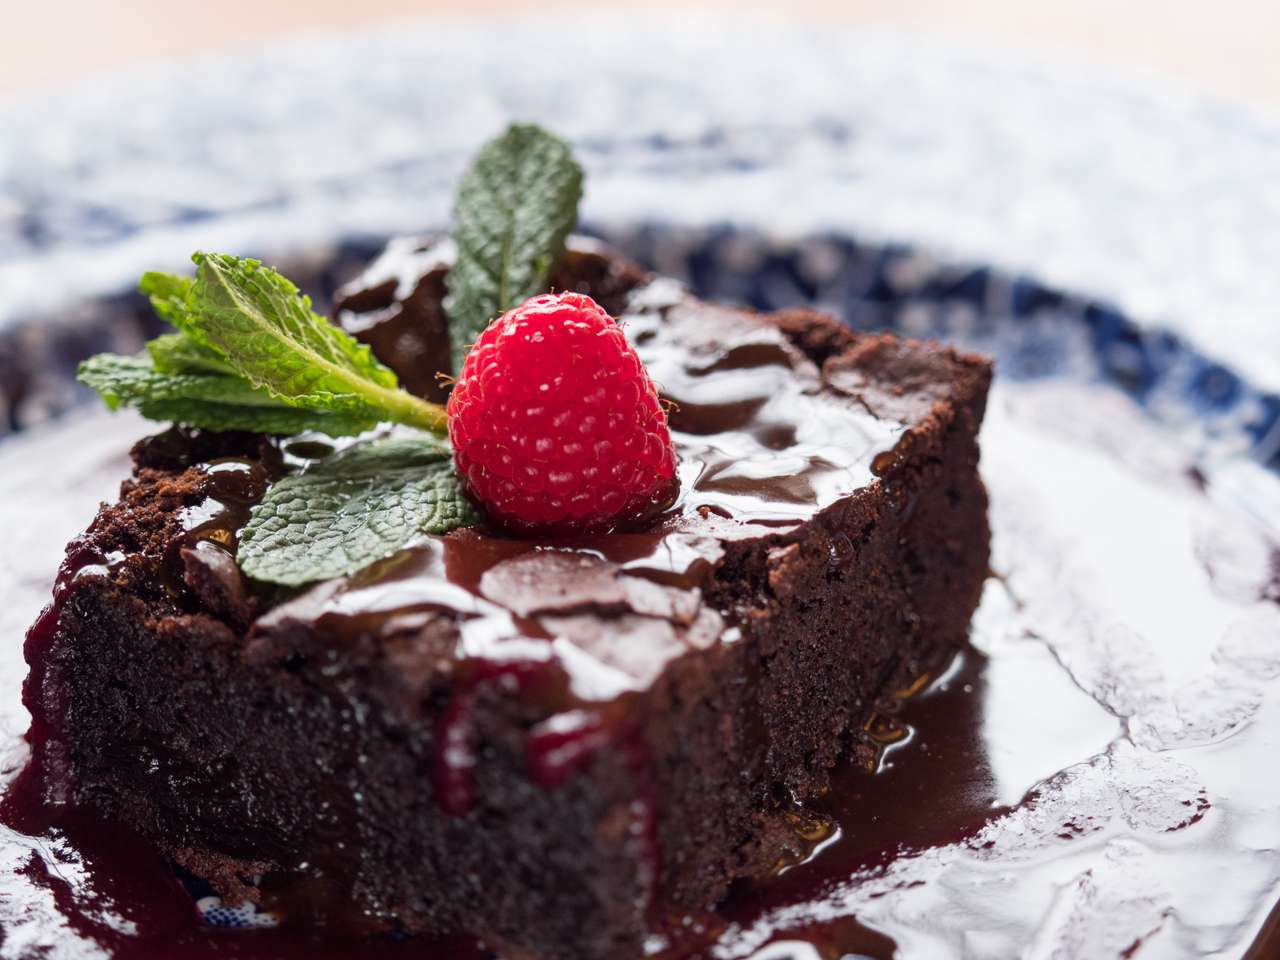 Ciérrese encima de la rebanada de pastel de chocolate servido en una placa con la salsa de chocolate. Fruta de frambuesa y hojas de menta en la parte superior. Ventana de luz natural. rompecabezas en línea